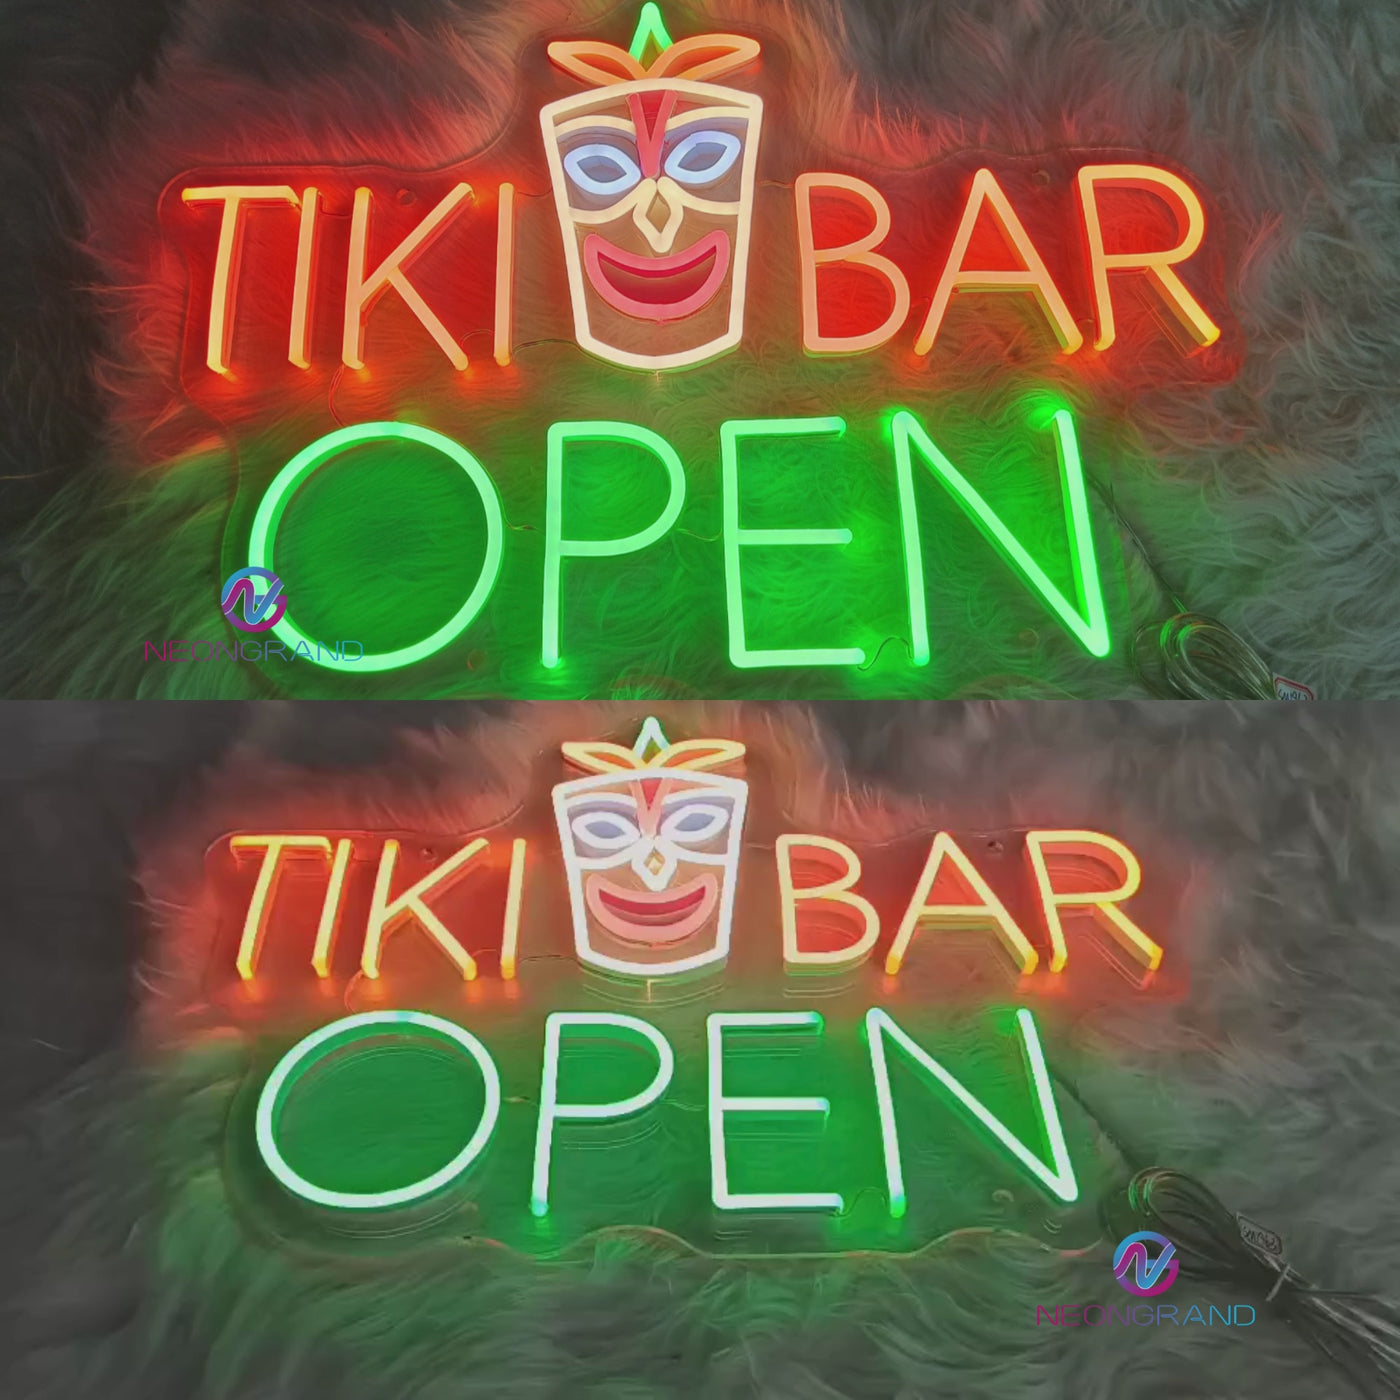 Tiki Bar Open Neon Sign Business Led Light